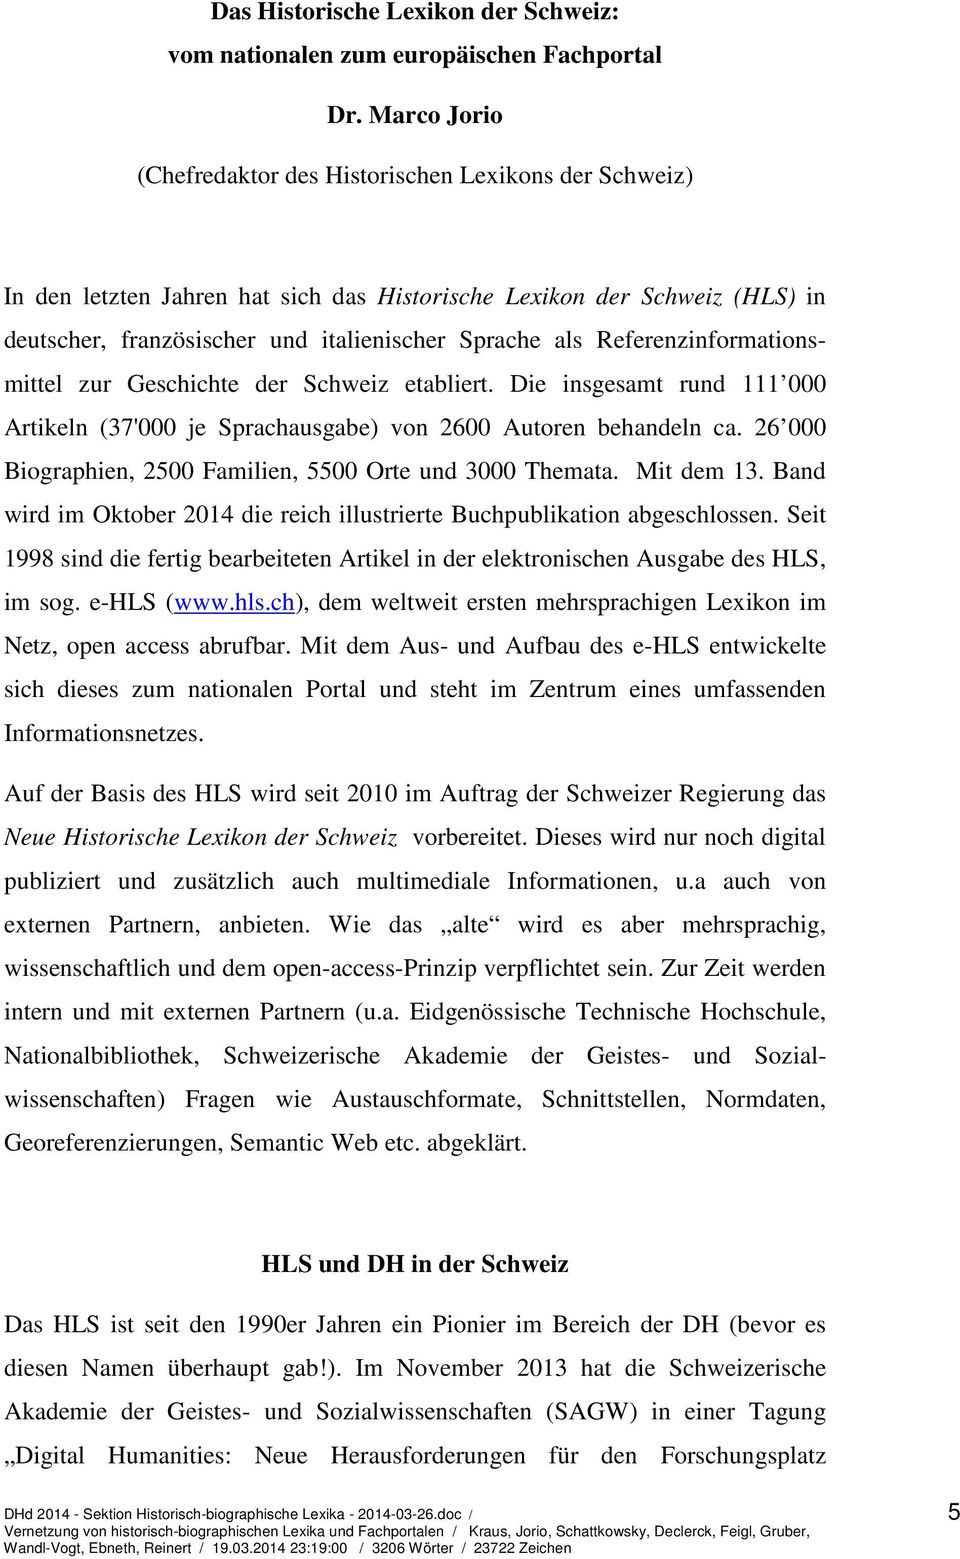 Referenzinformationsmittel zur Geschichte der Schweiz etabliert. Die insgesamt rund 111 000 Artikeln (37'000 je Sprachausgabe) von 2600 Autoren behandeln ca.